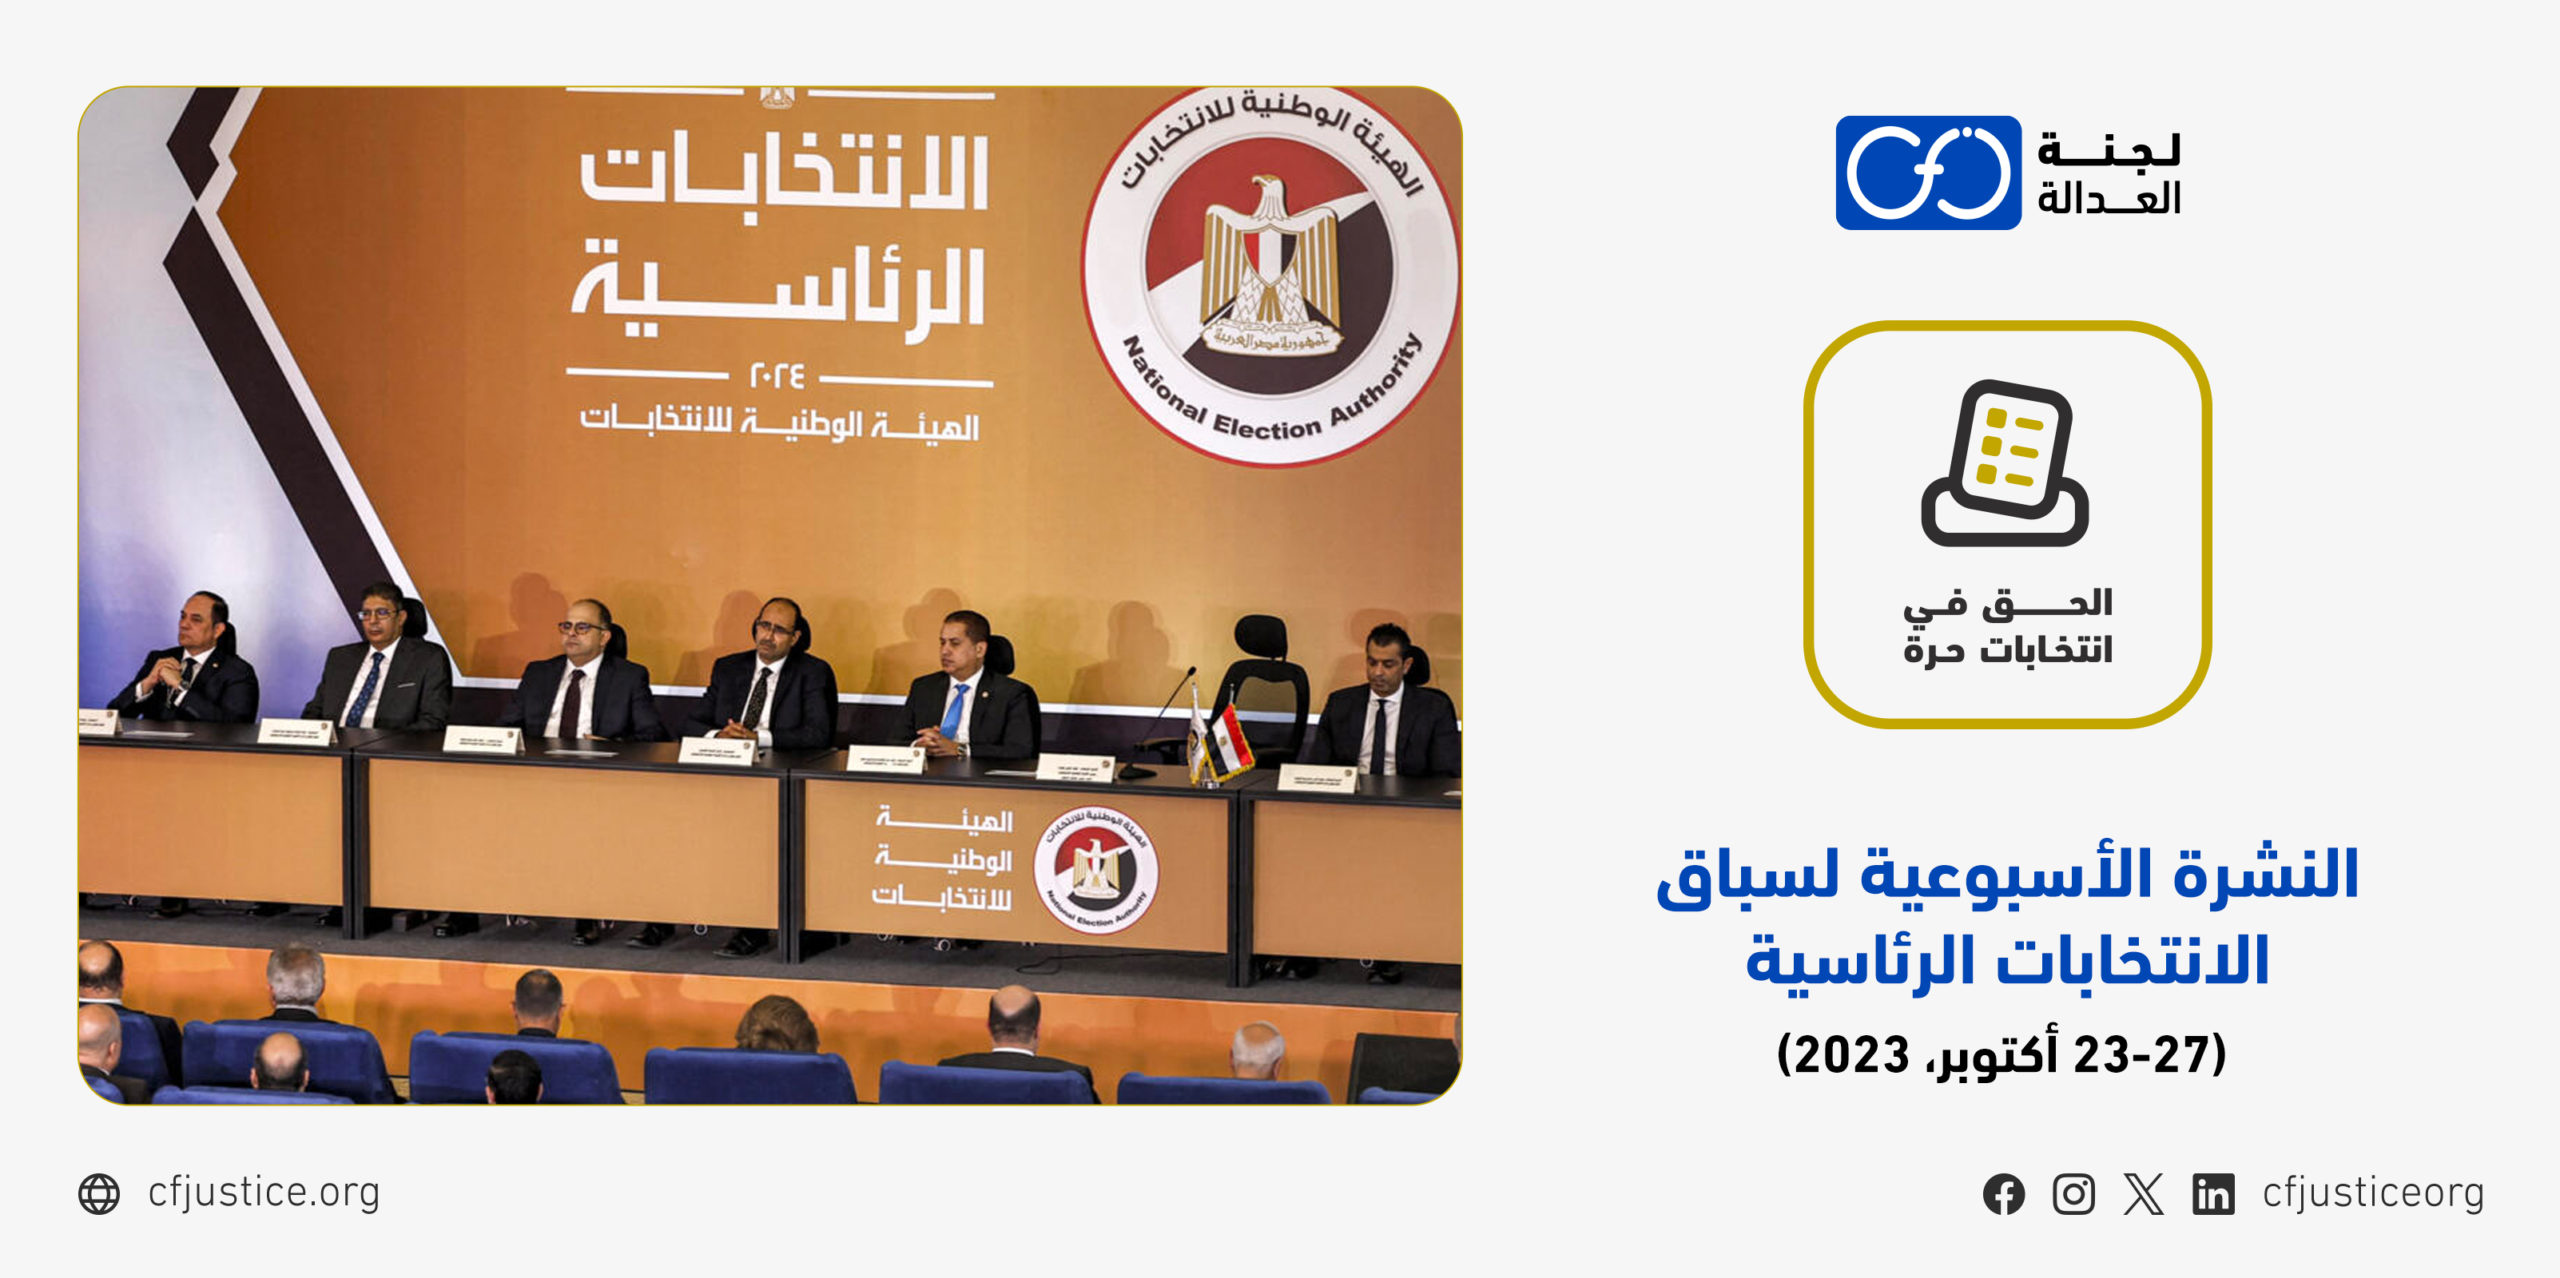 النشرة الأسبوعية لسباق الانتخابات الرئاسية المصرية 2024 خلال الفترة من (23-27 أكتوبر، 2023)